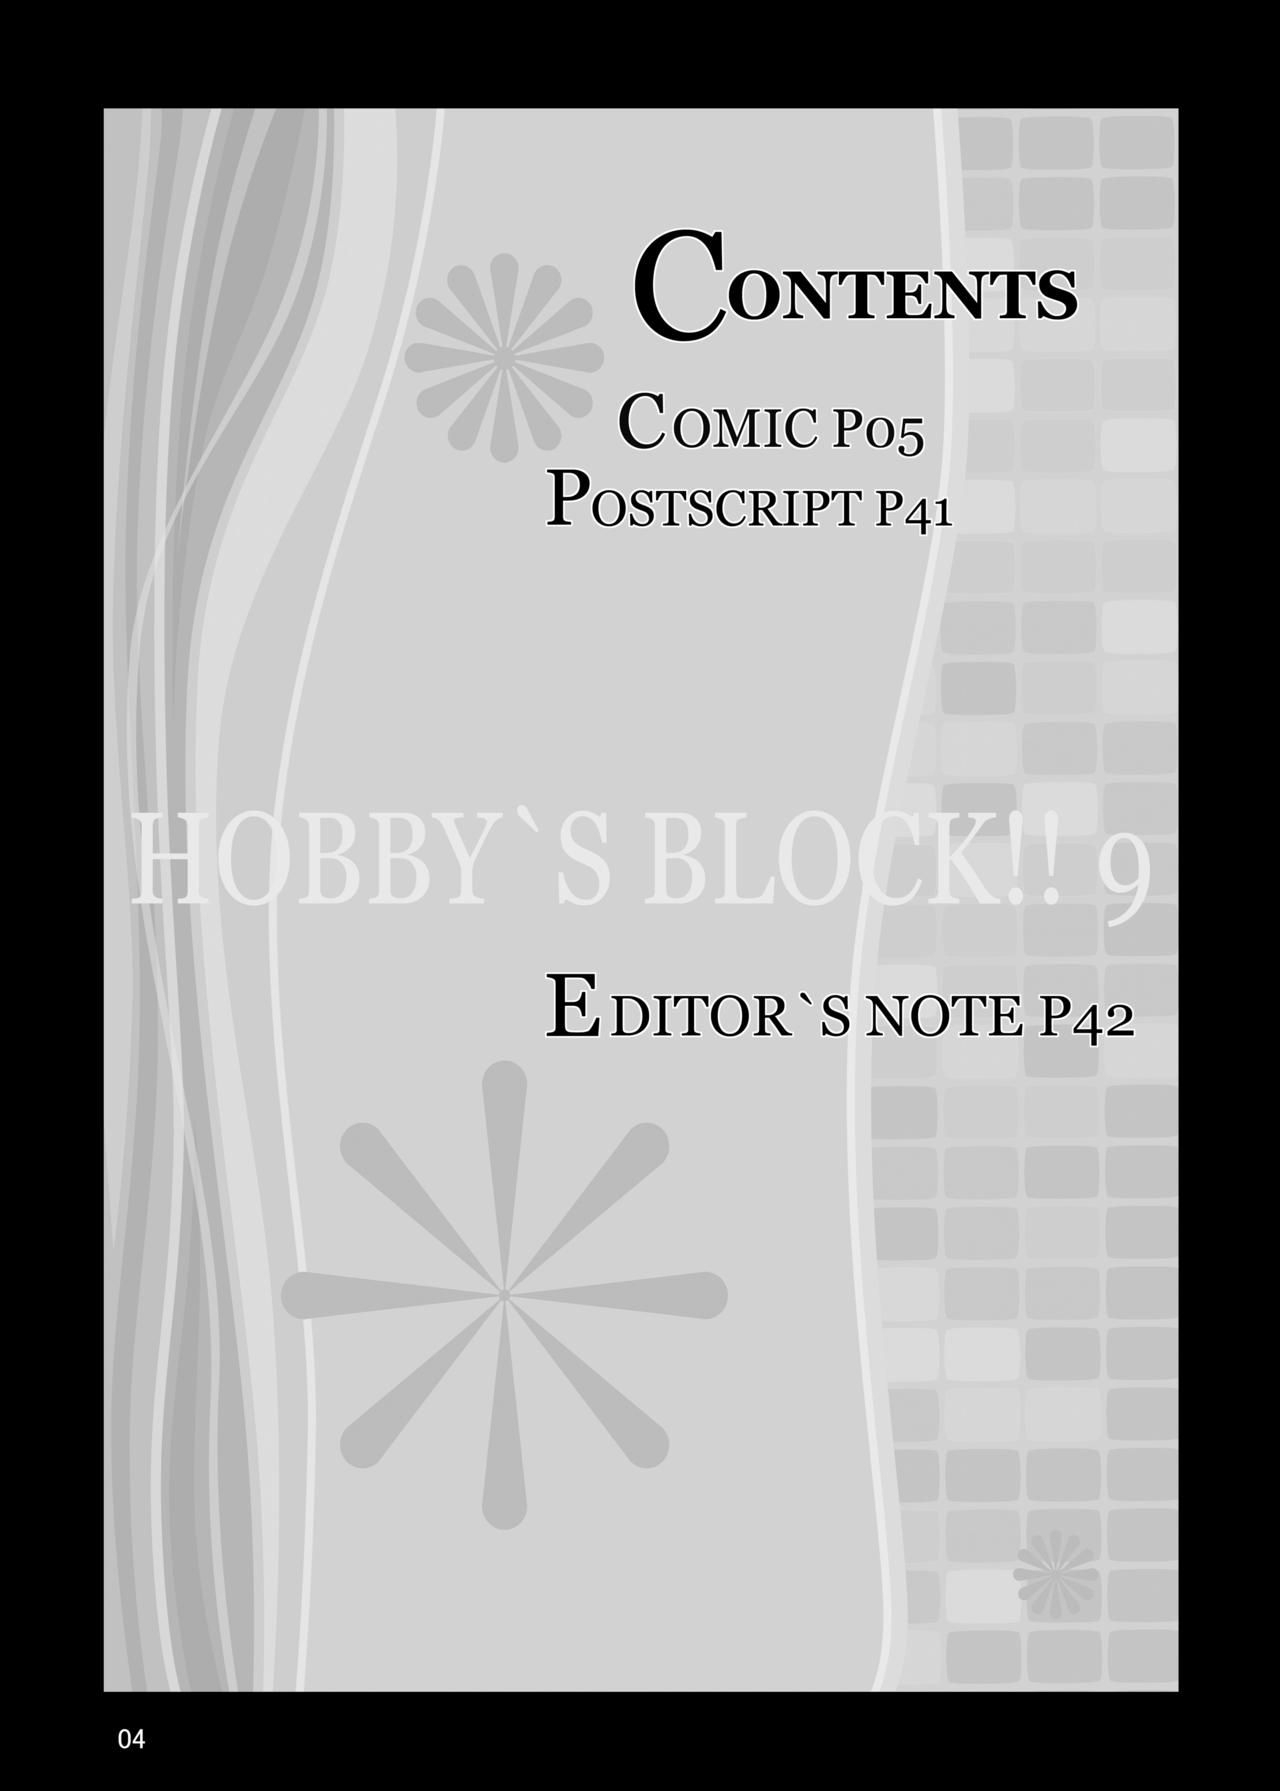 [天城製鉄所 (えびす)] HOBBY'S BLOCK!!9 現在遠恋中 (ペルソナ4) [DL版]